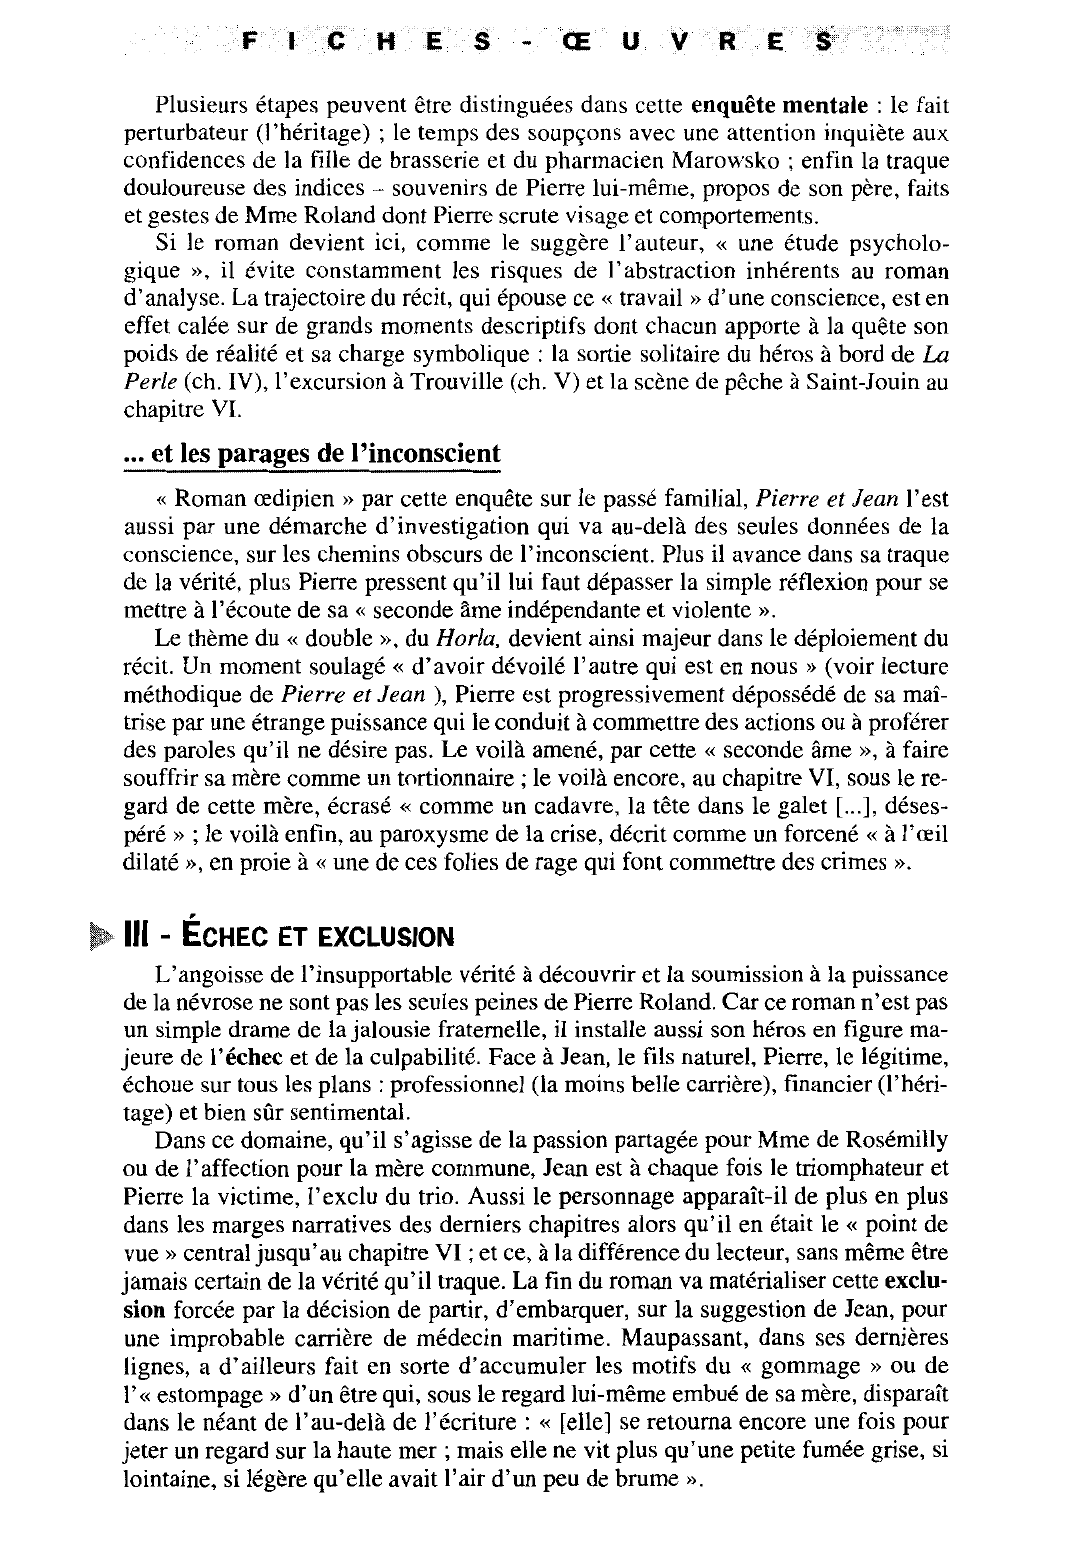 Prévisualisation du document FICHE OEUVRE: Pierre et Jean (1888) de Maupassant